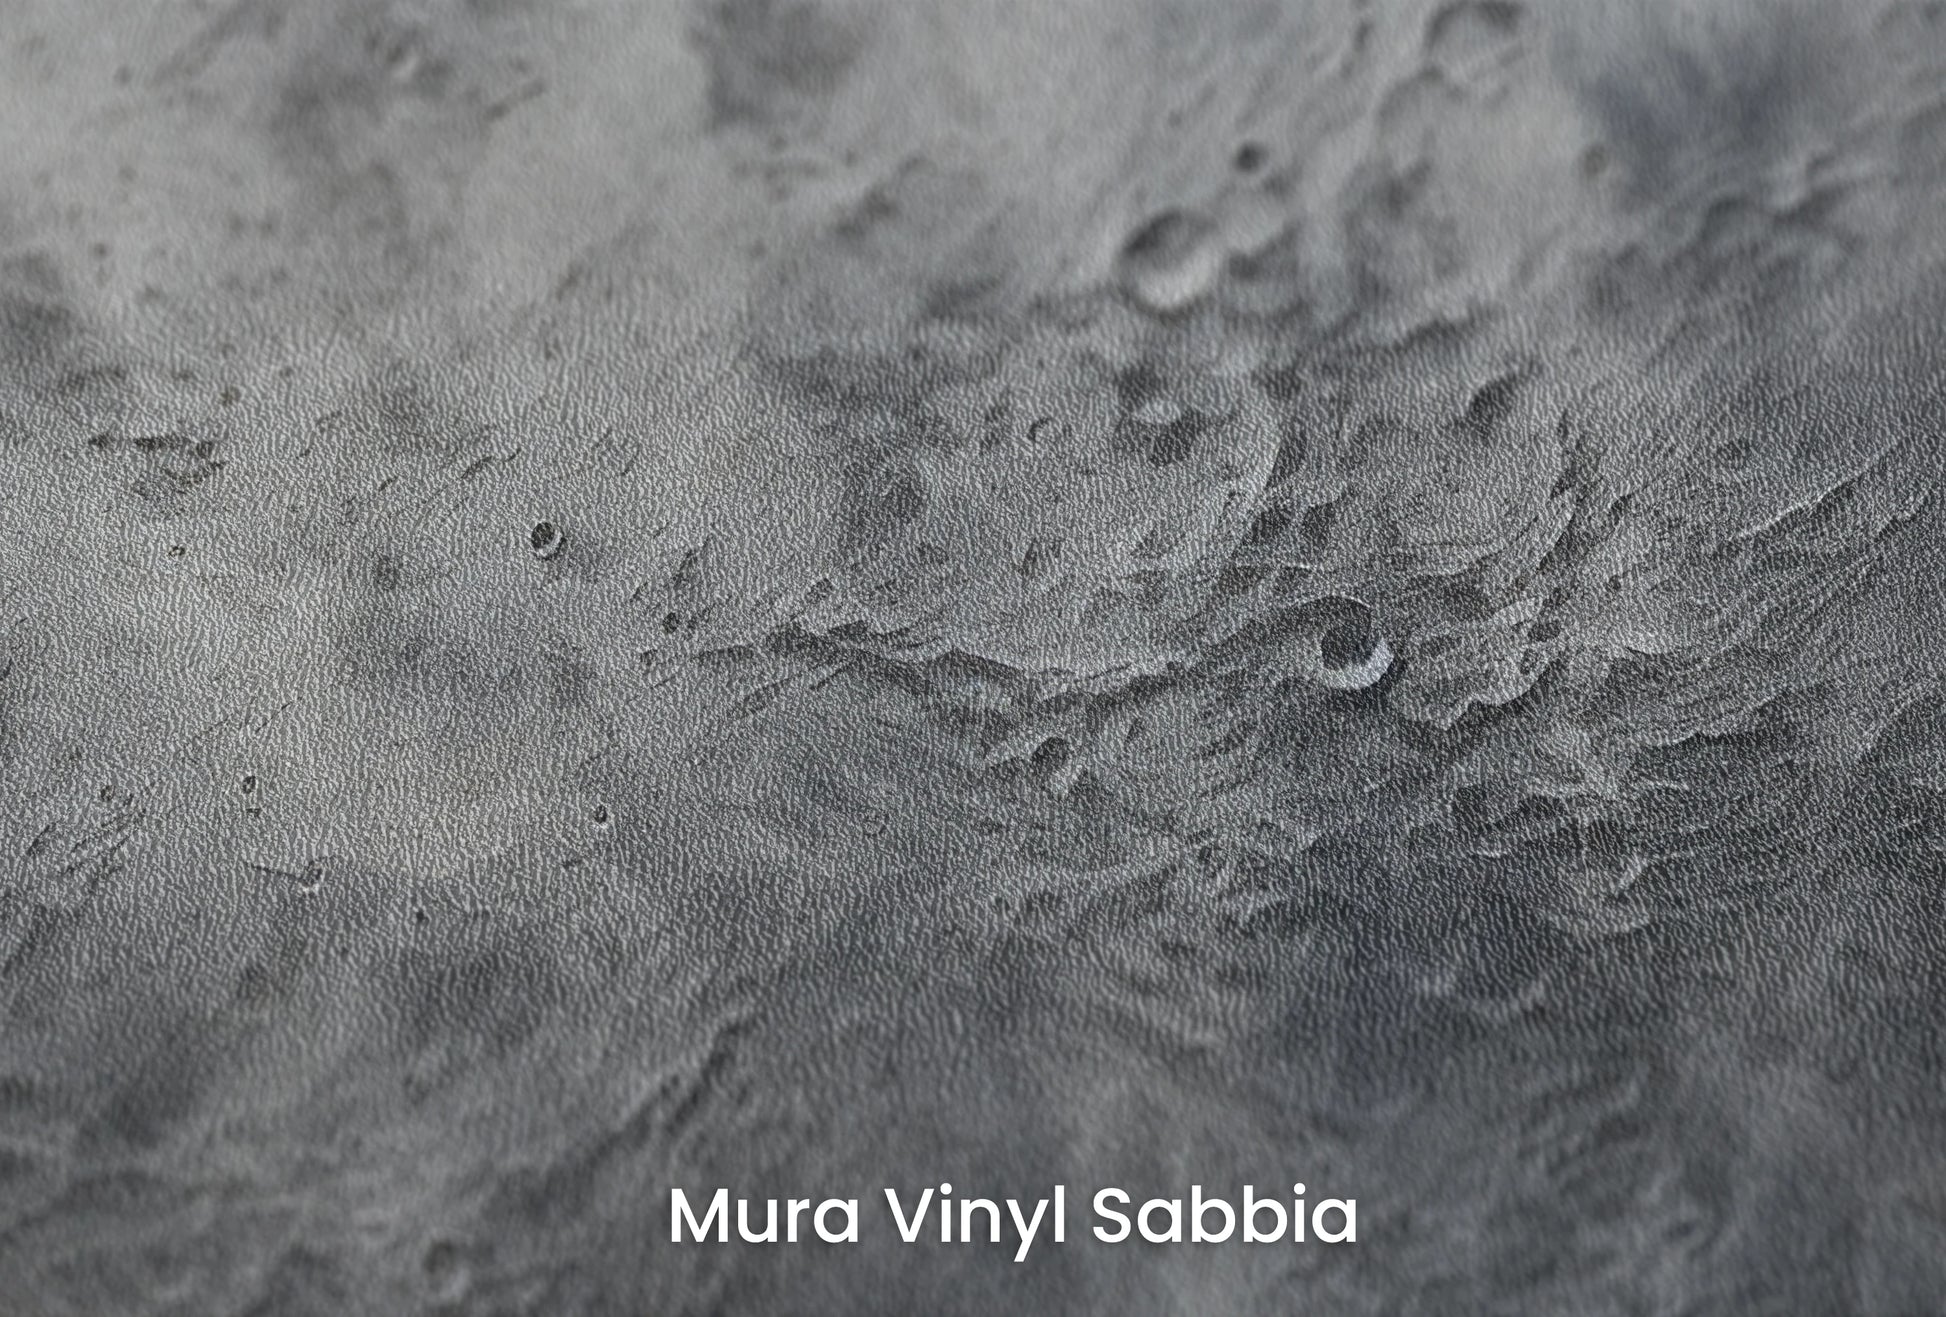 Zbliżenie na artystyczną fototapetę o nazwie Cratered Terrain na podłożu Mura Vinyl Sabbia struktura grubego ziarna piasku.